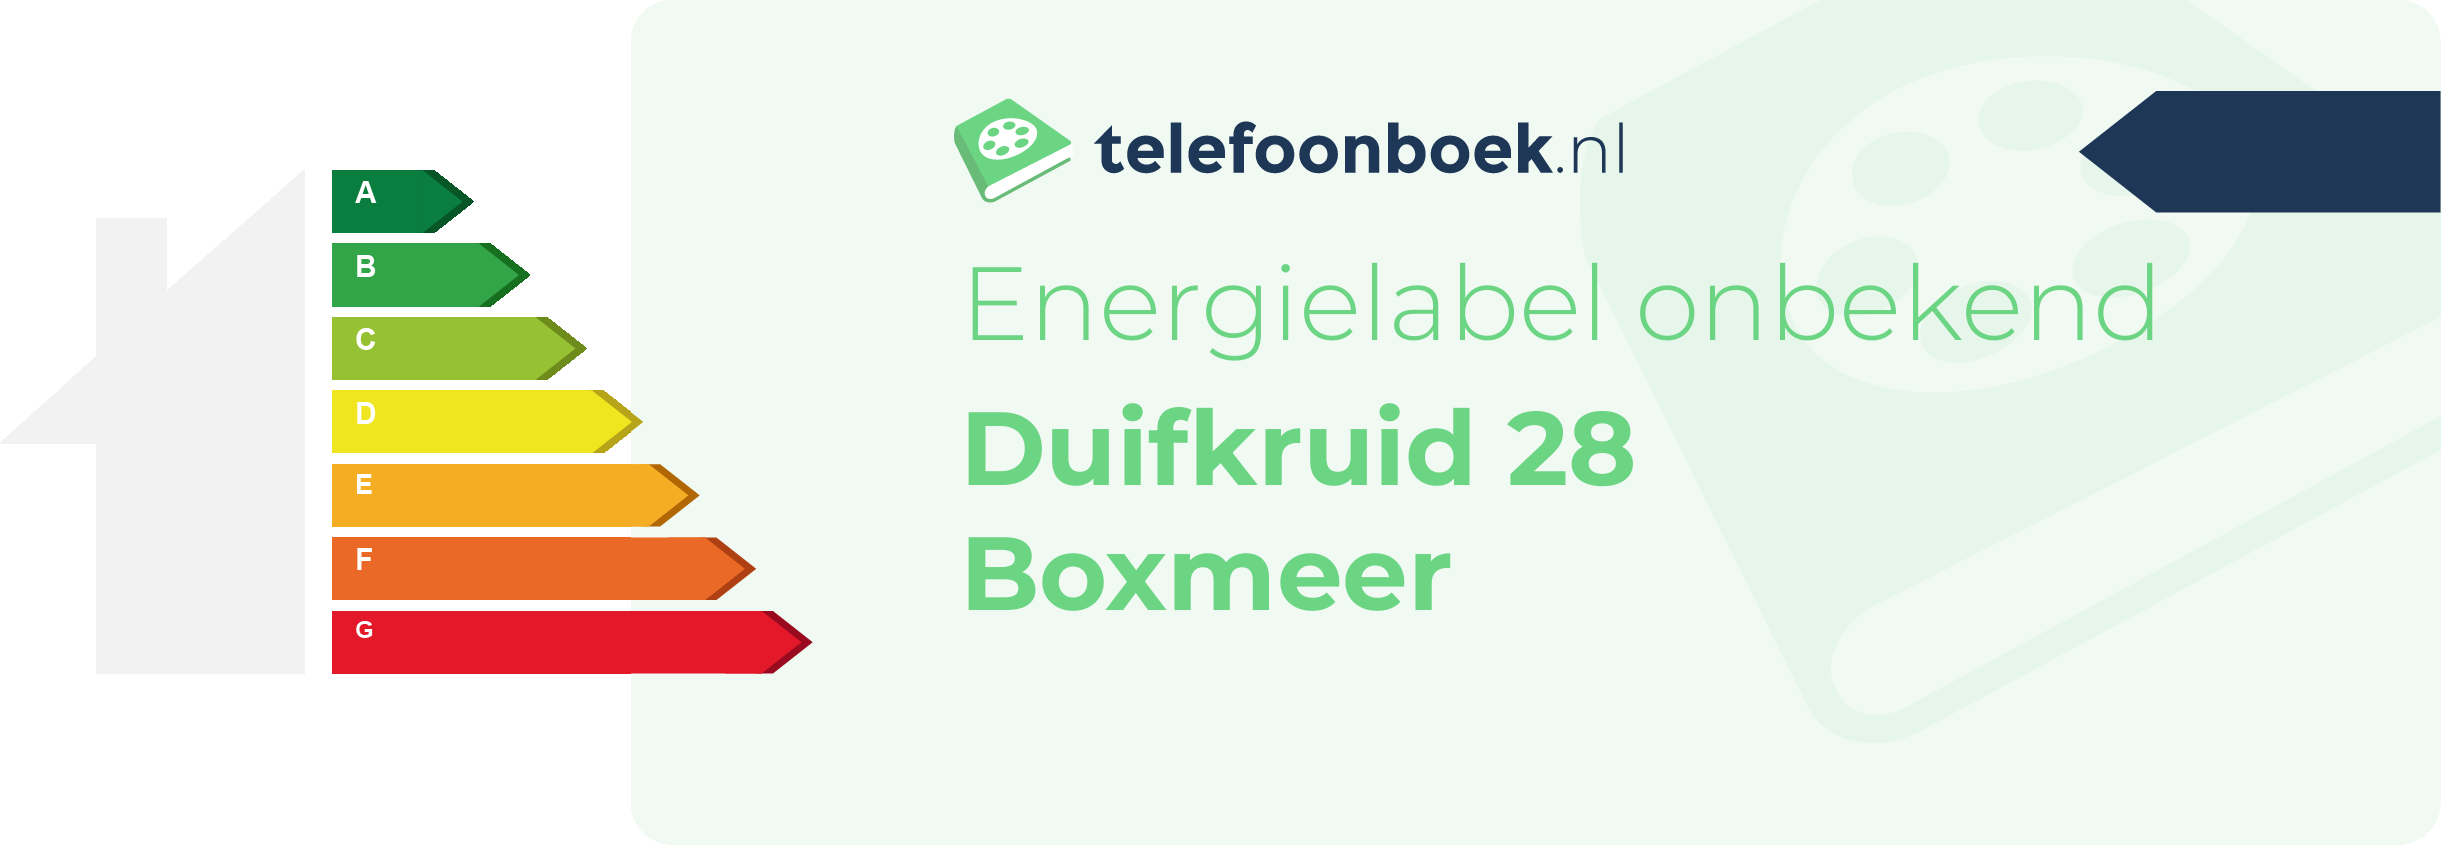 Energielabel Duifkruid 28 Boxmeer